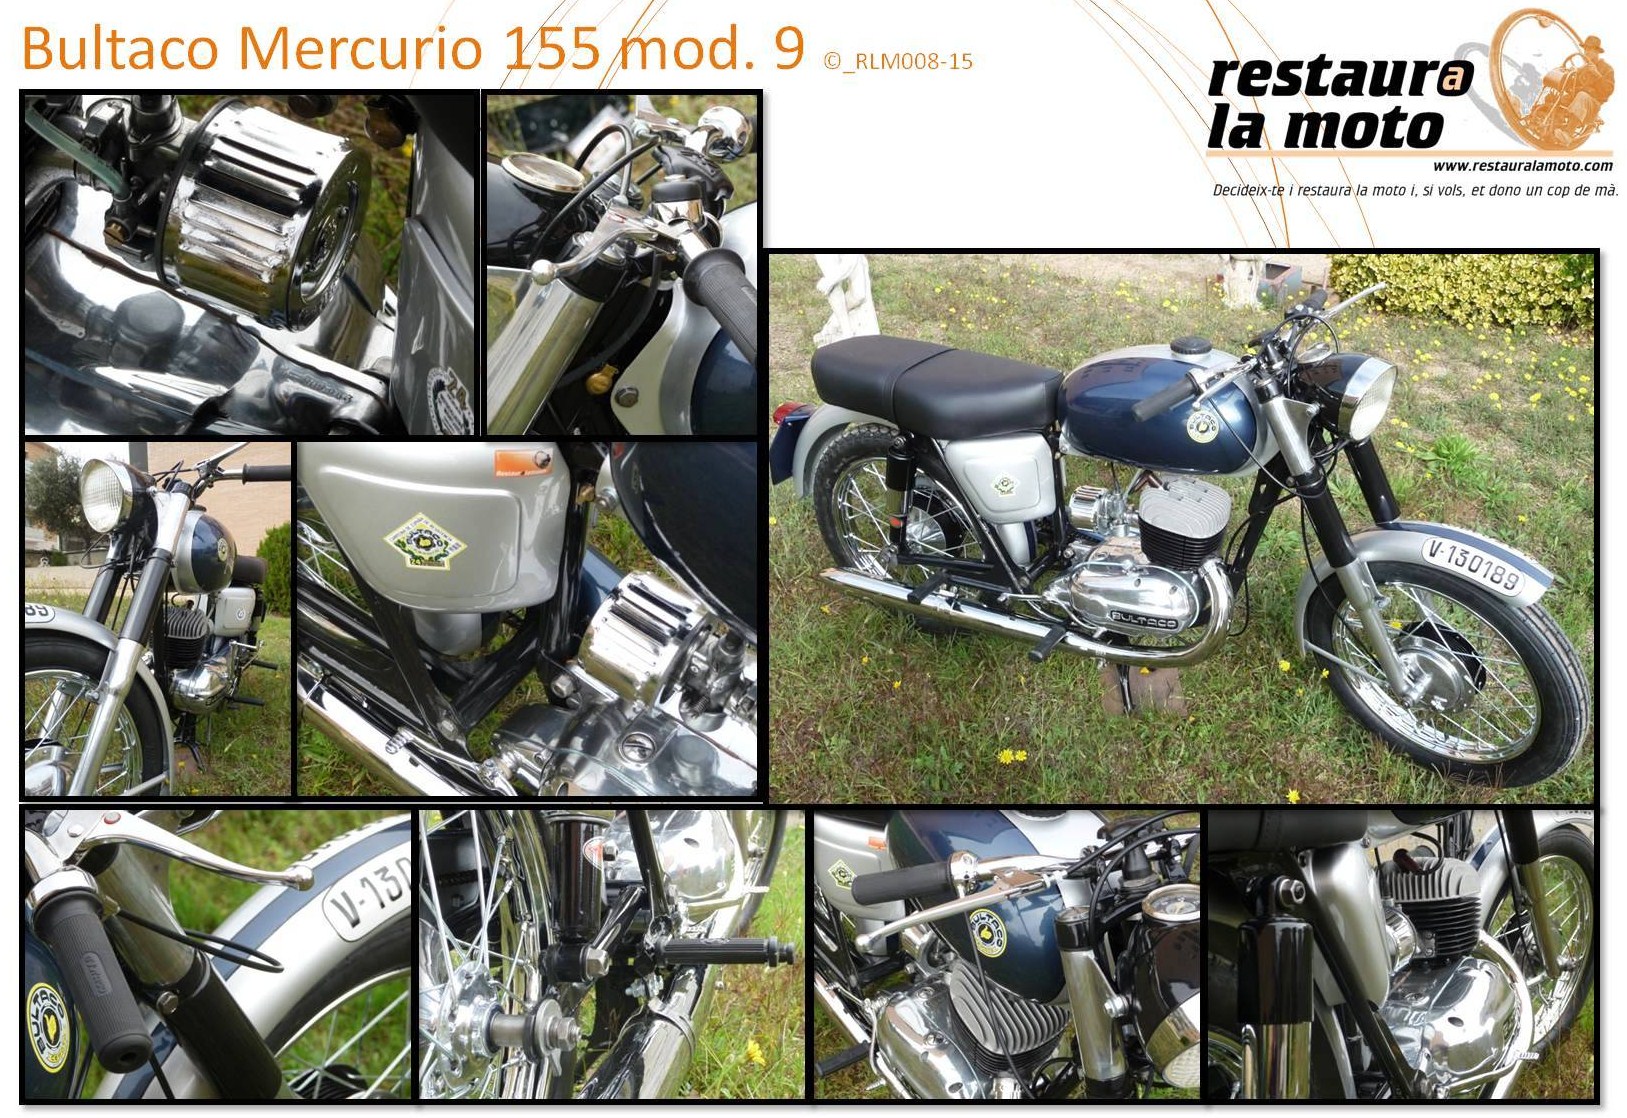 Restaura la moto Bultaco Mercurio mod 9